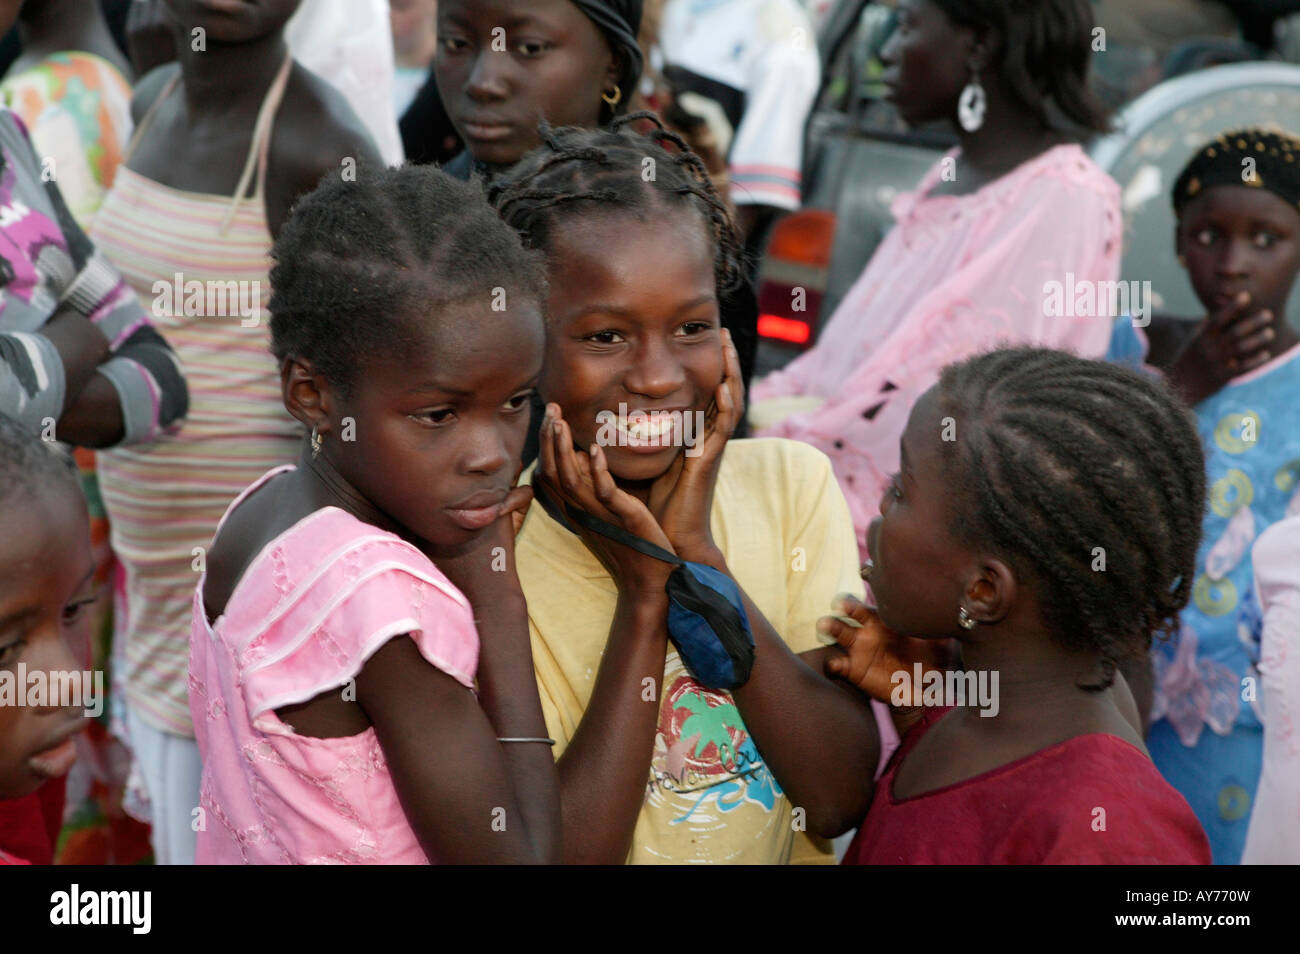 Smiling African children au Kartong festival l'Afrique de l'Ouest Gambie Banque D'Images